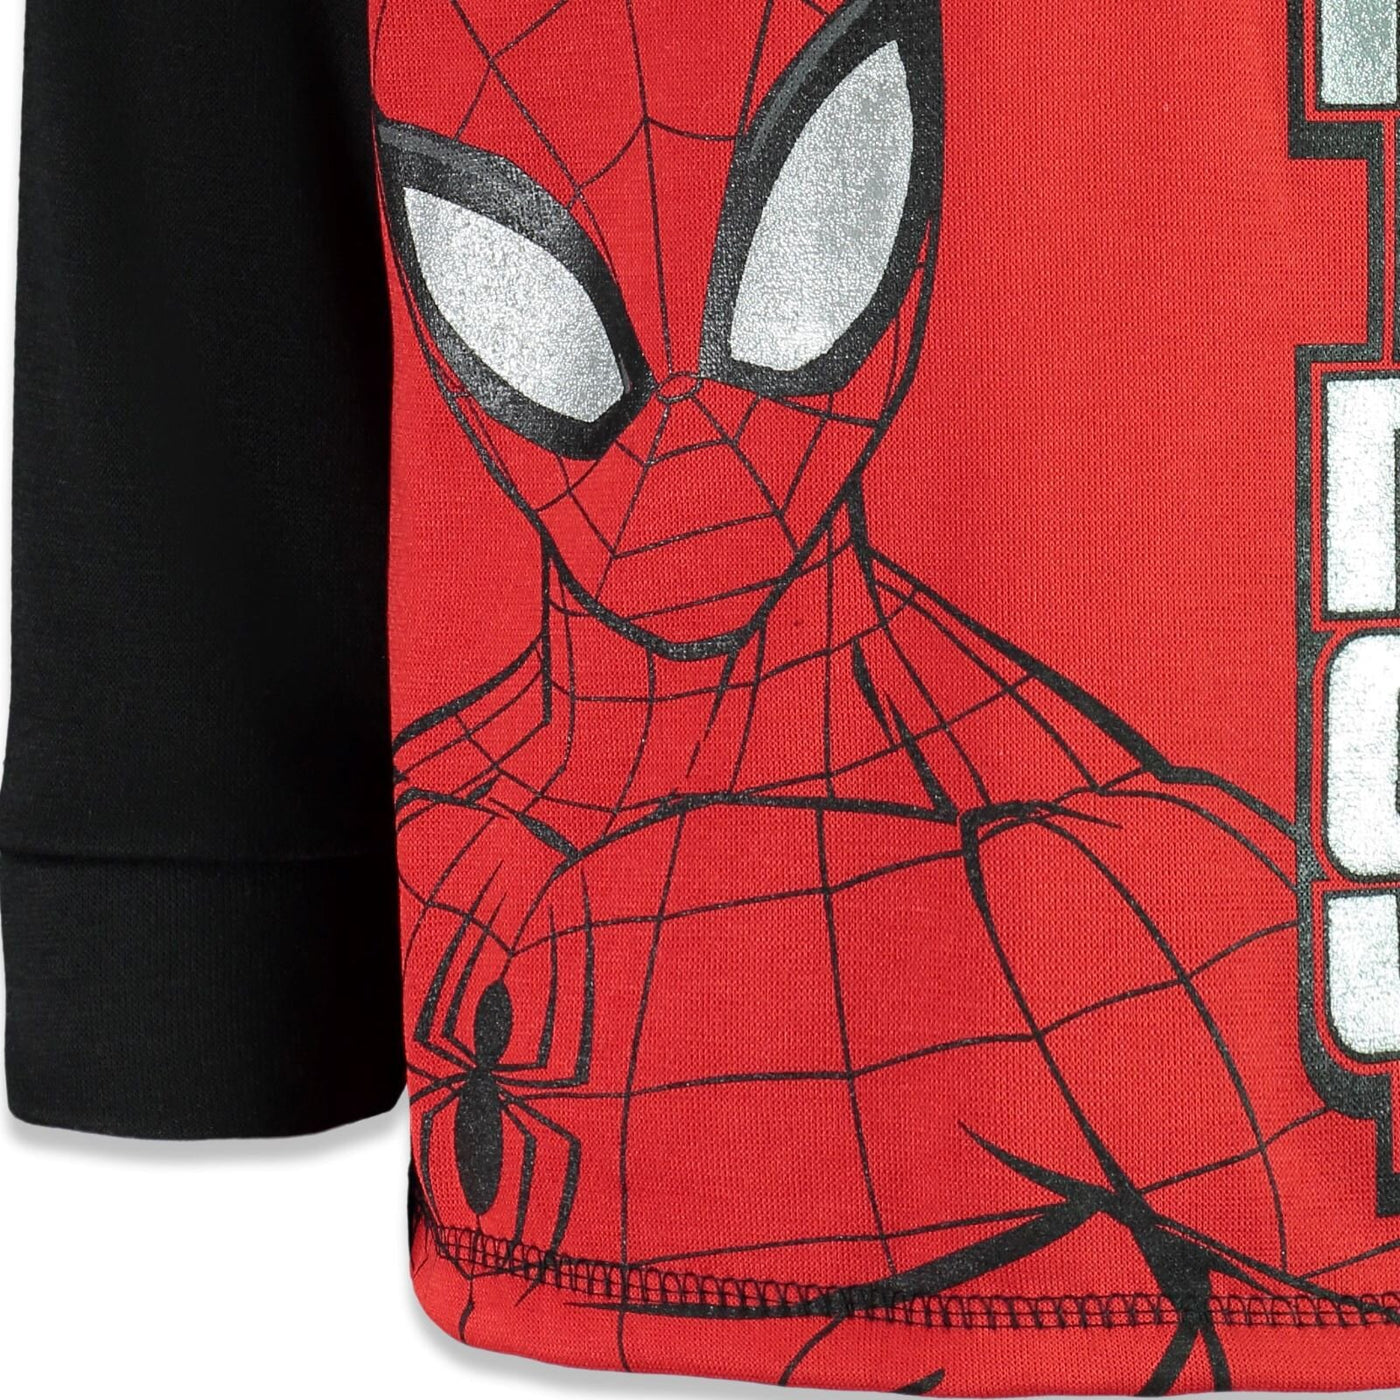 Marvel Spider-Man Fleece Half Zip Hoodie